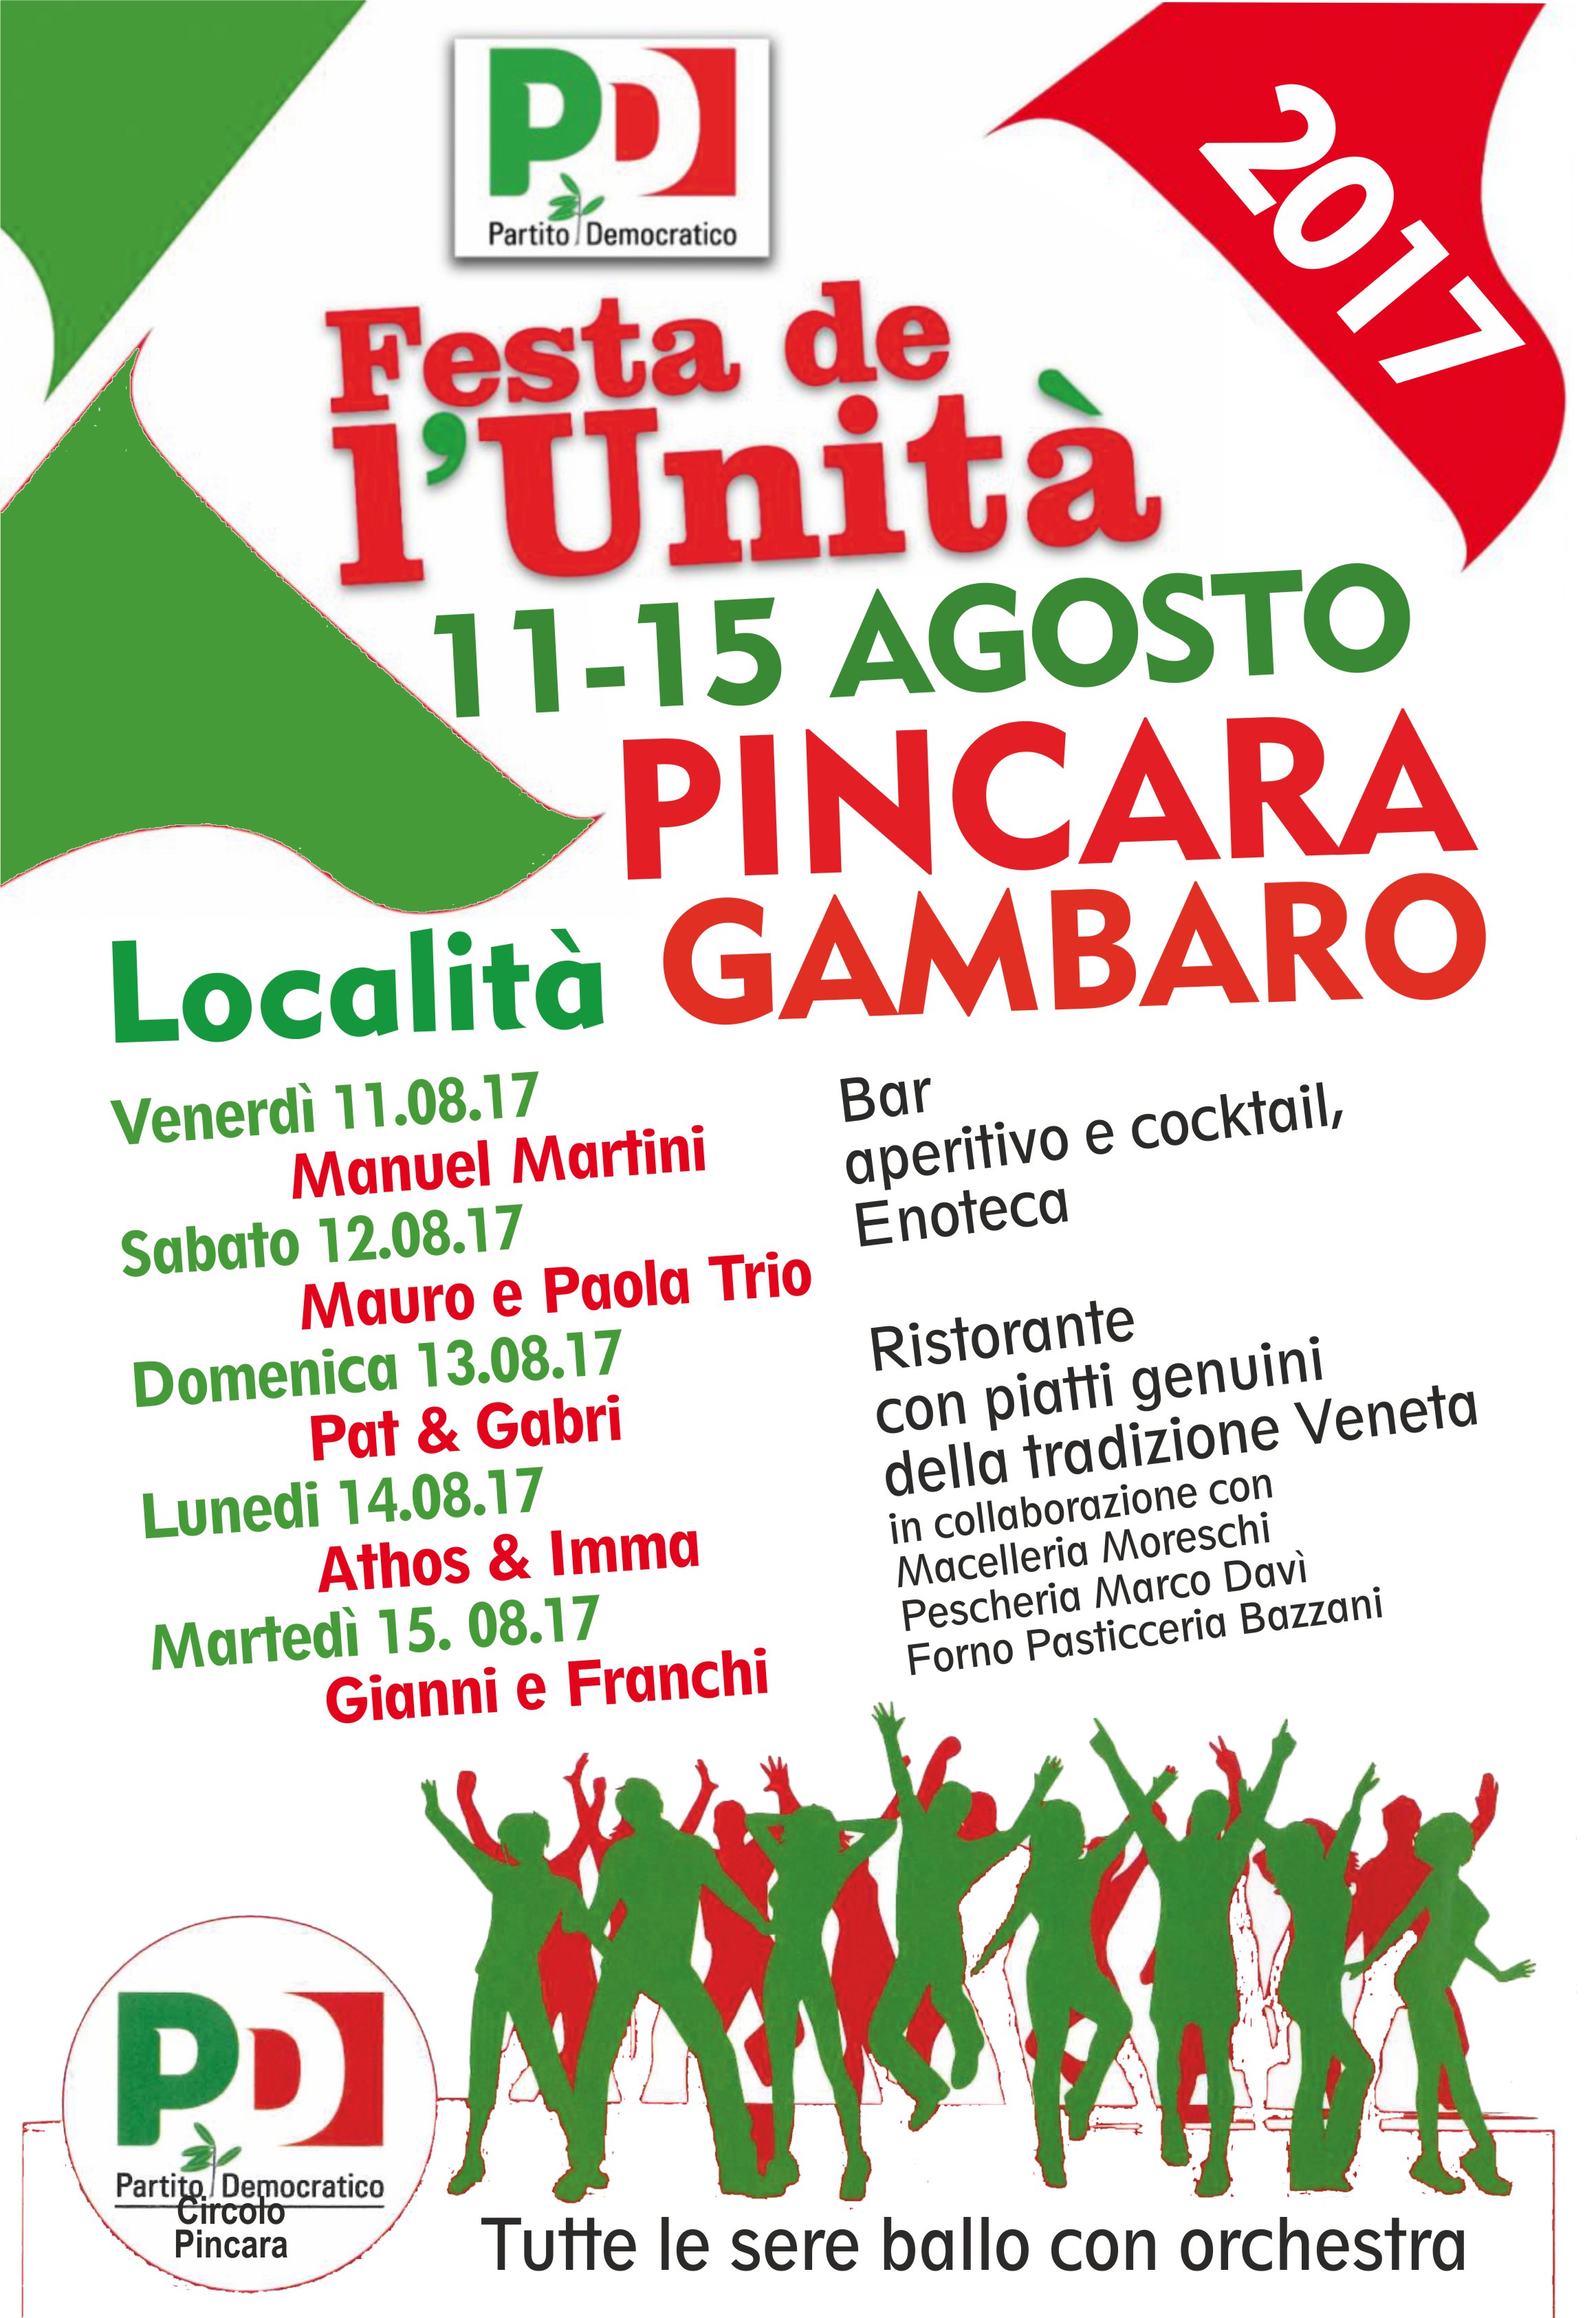 Al momento stai visualizzando Pincara – Festa de l’Unità località Gambaro dall’11 al 15 agosto.